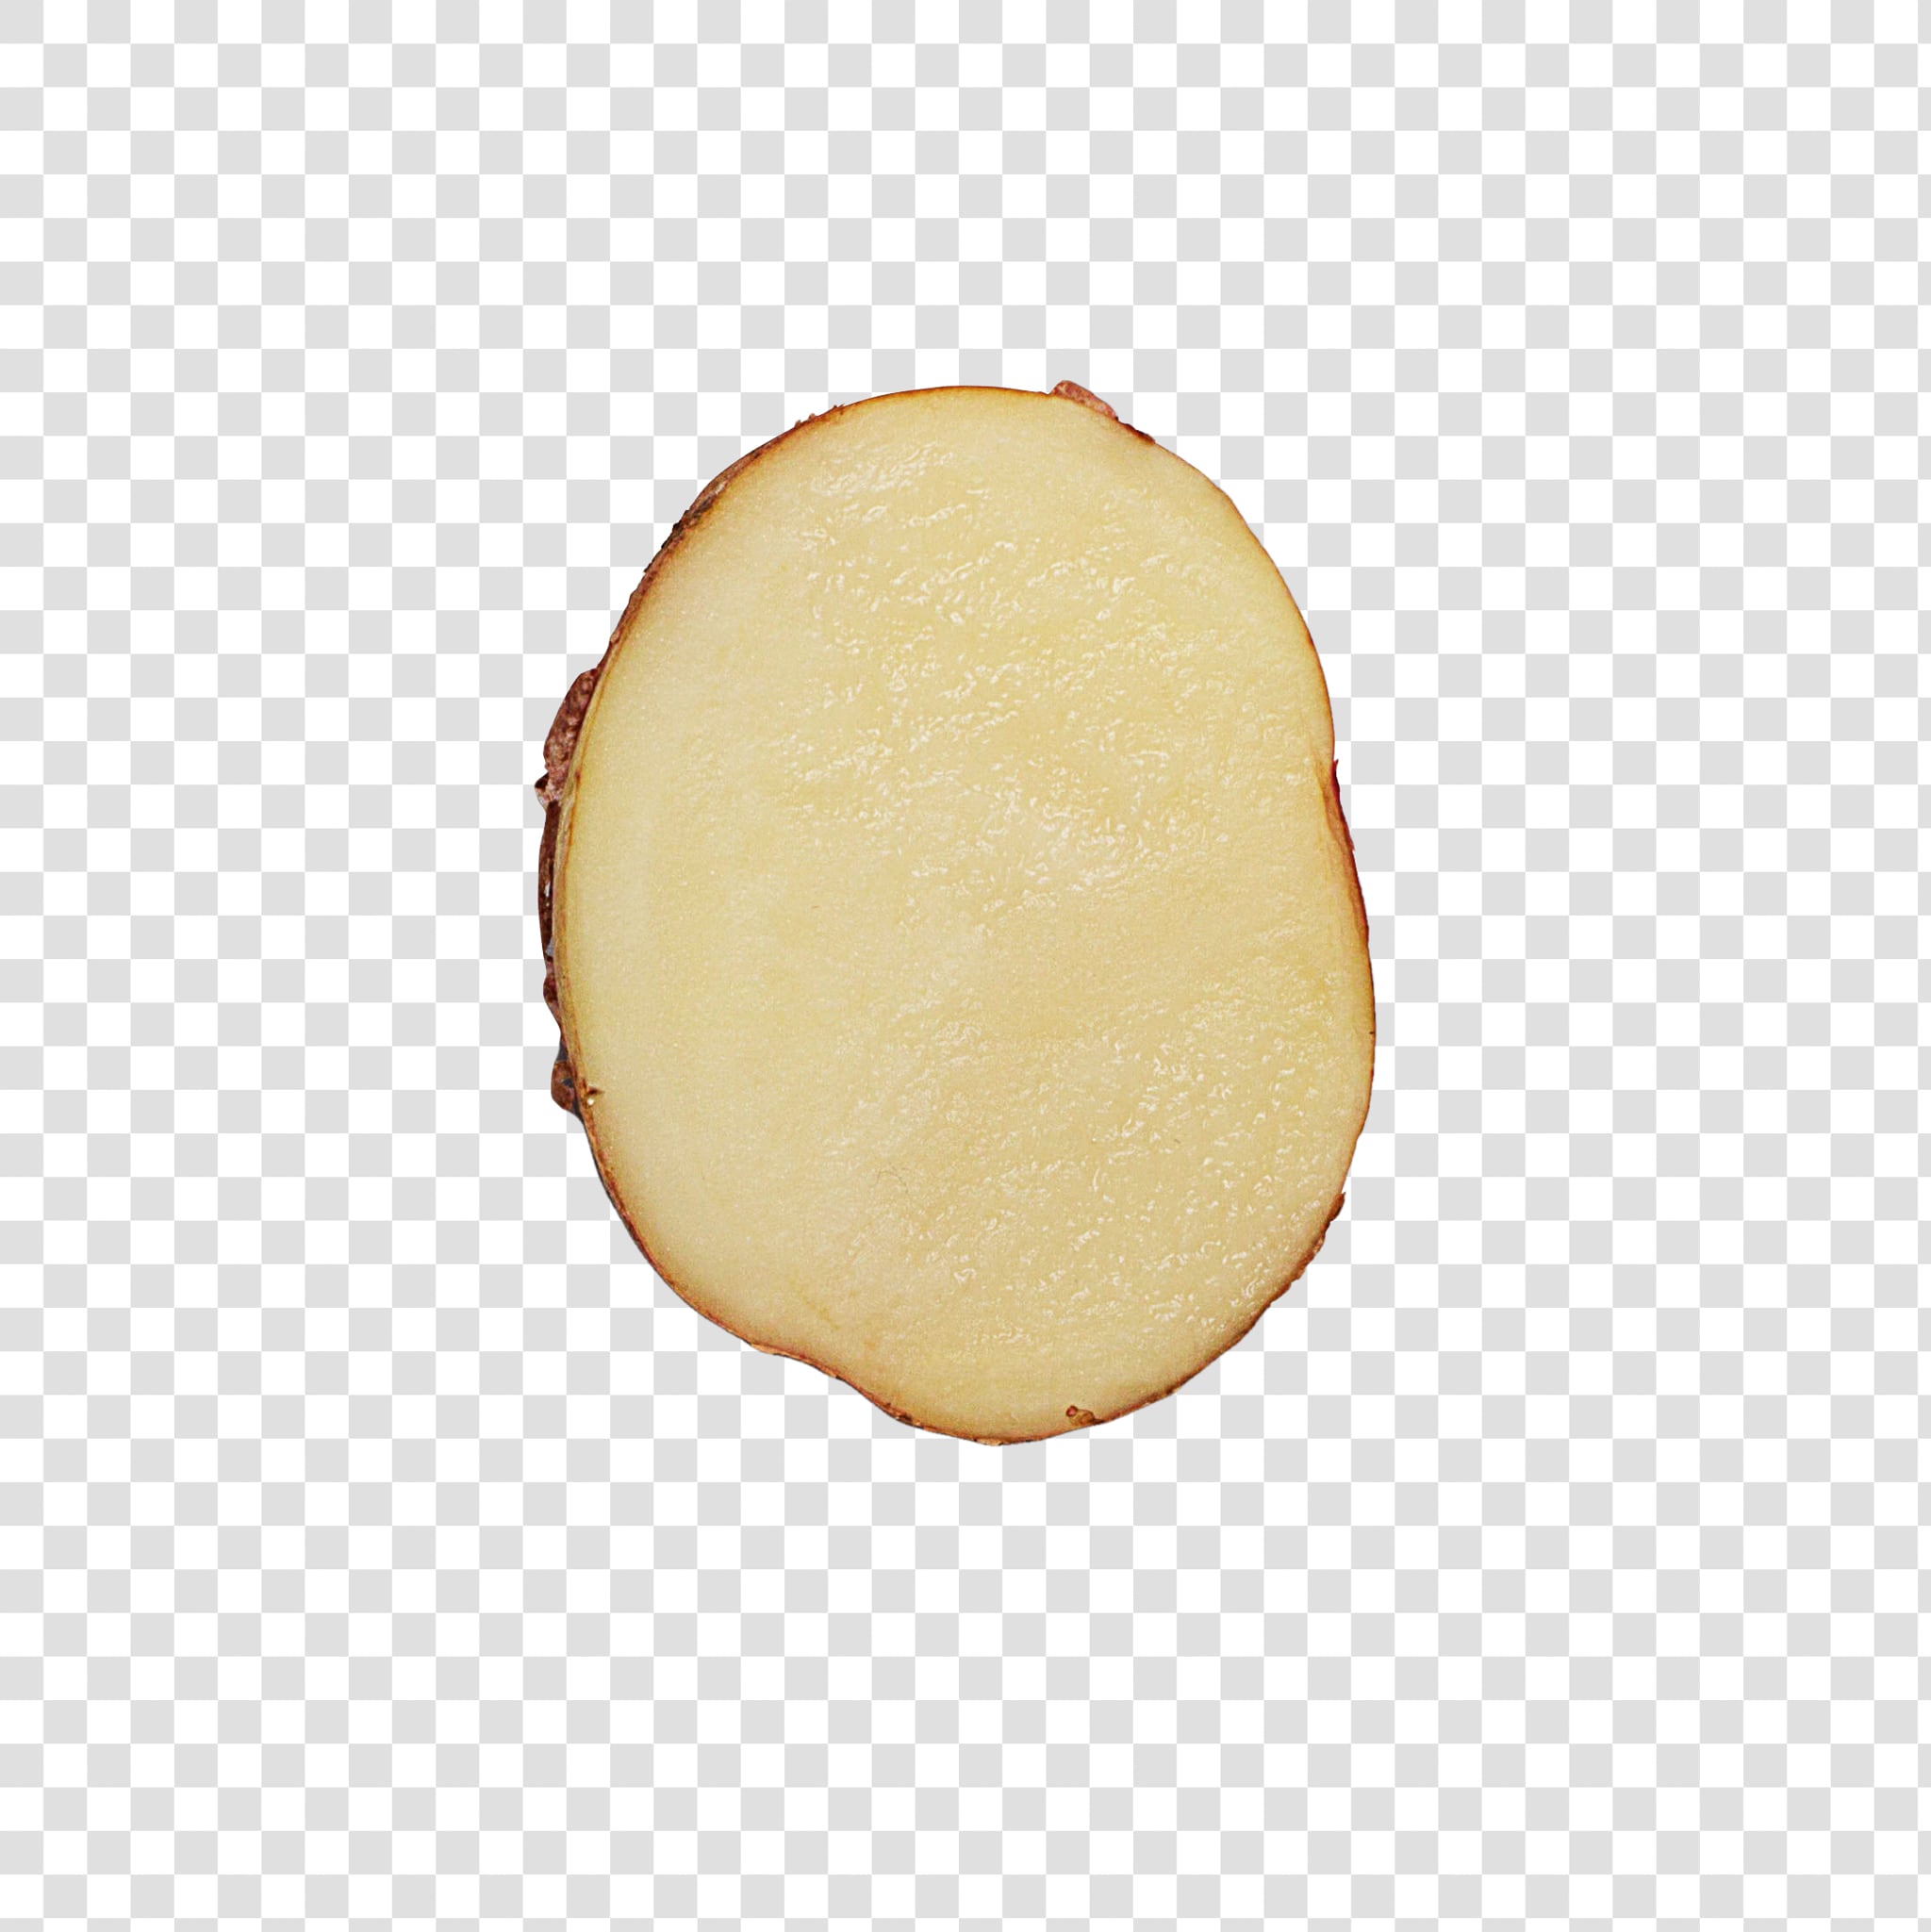 Potato PSD layered image